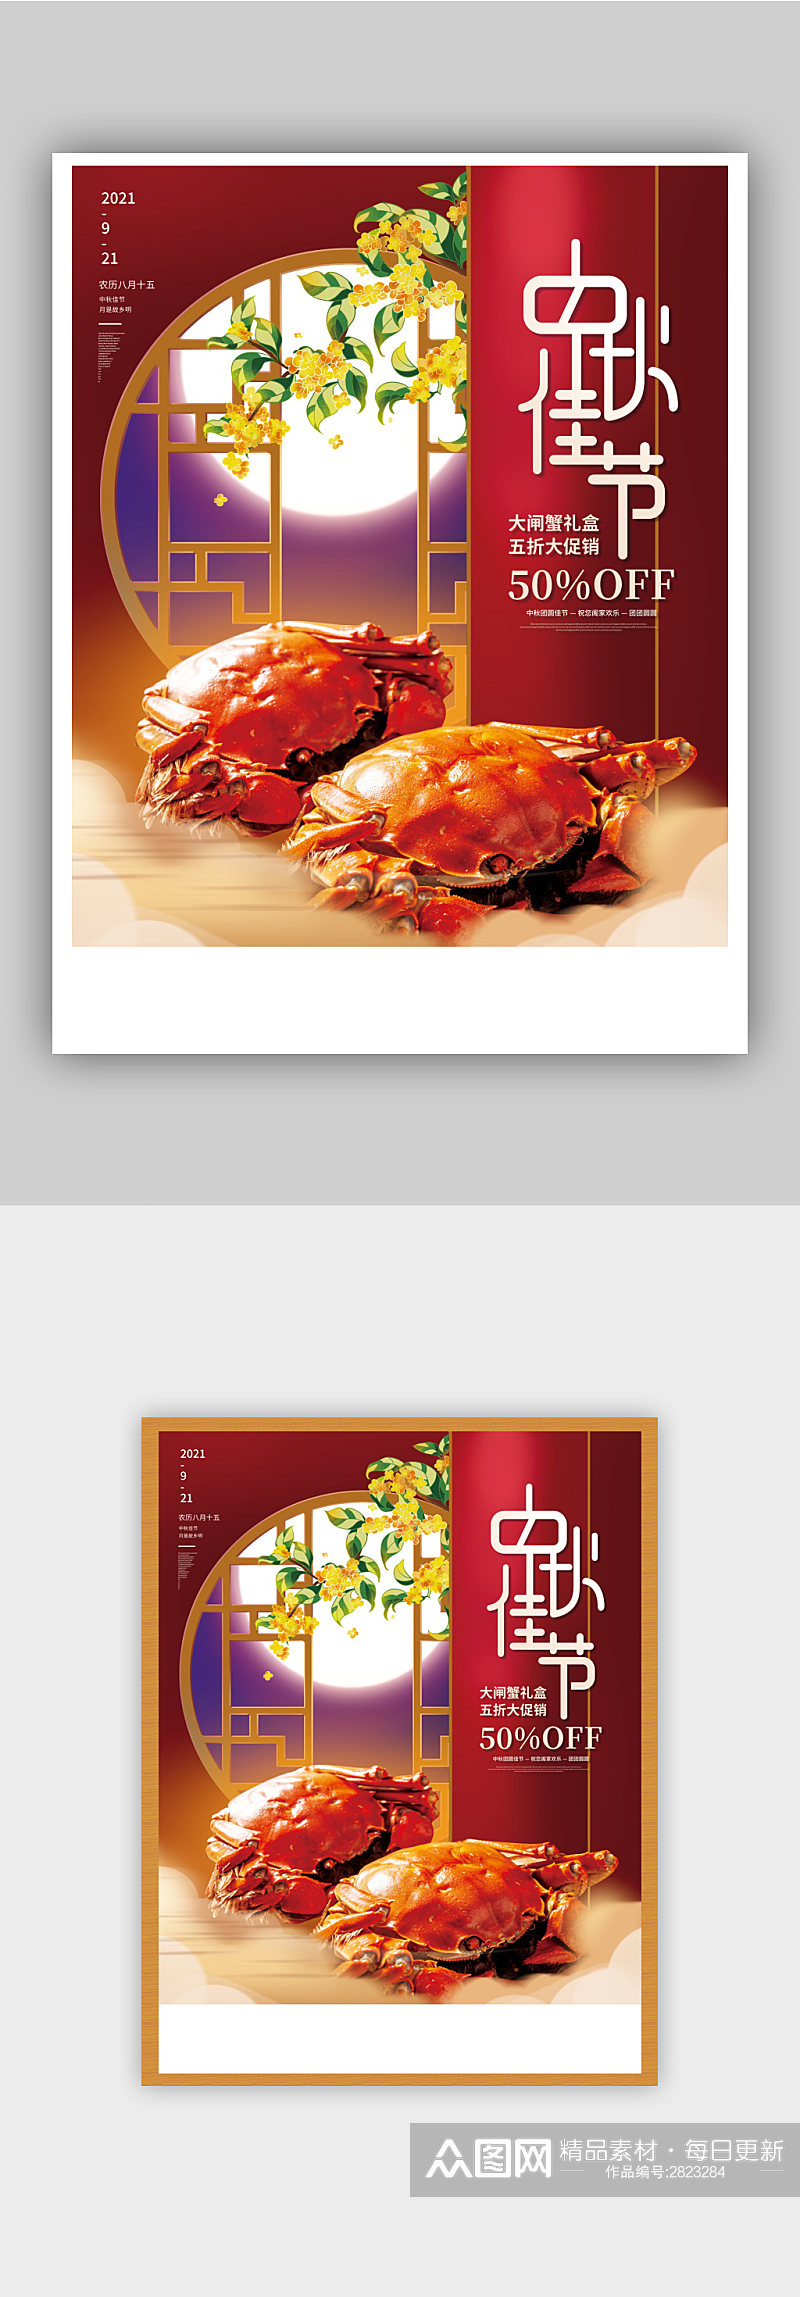 红色喜庆中秋节大闸蟹螃蟹促销活动海报素材